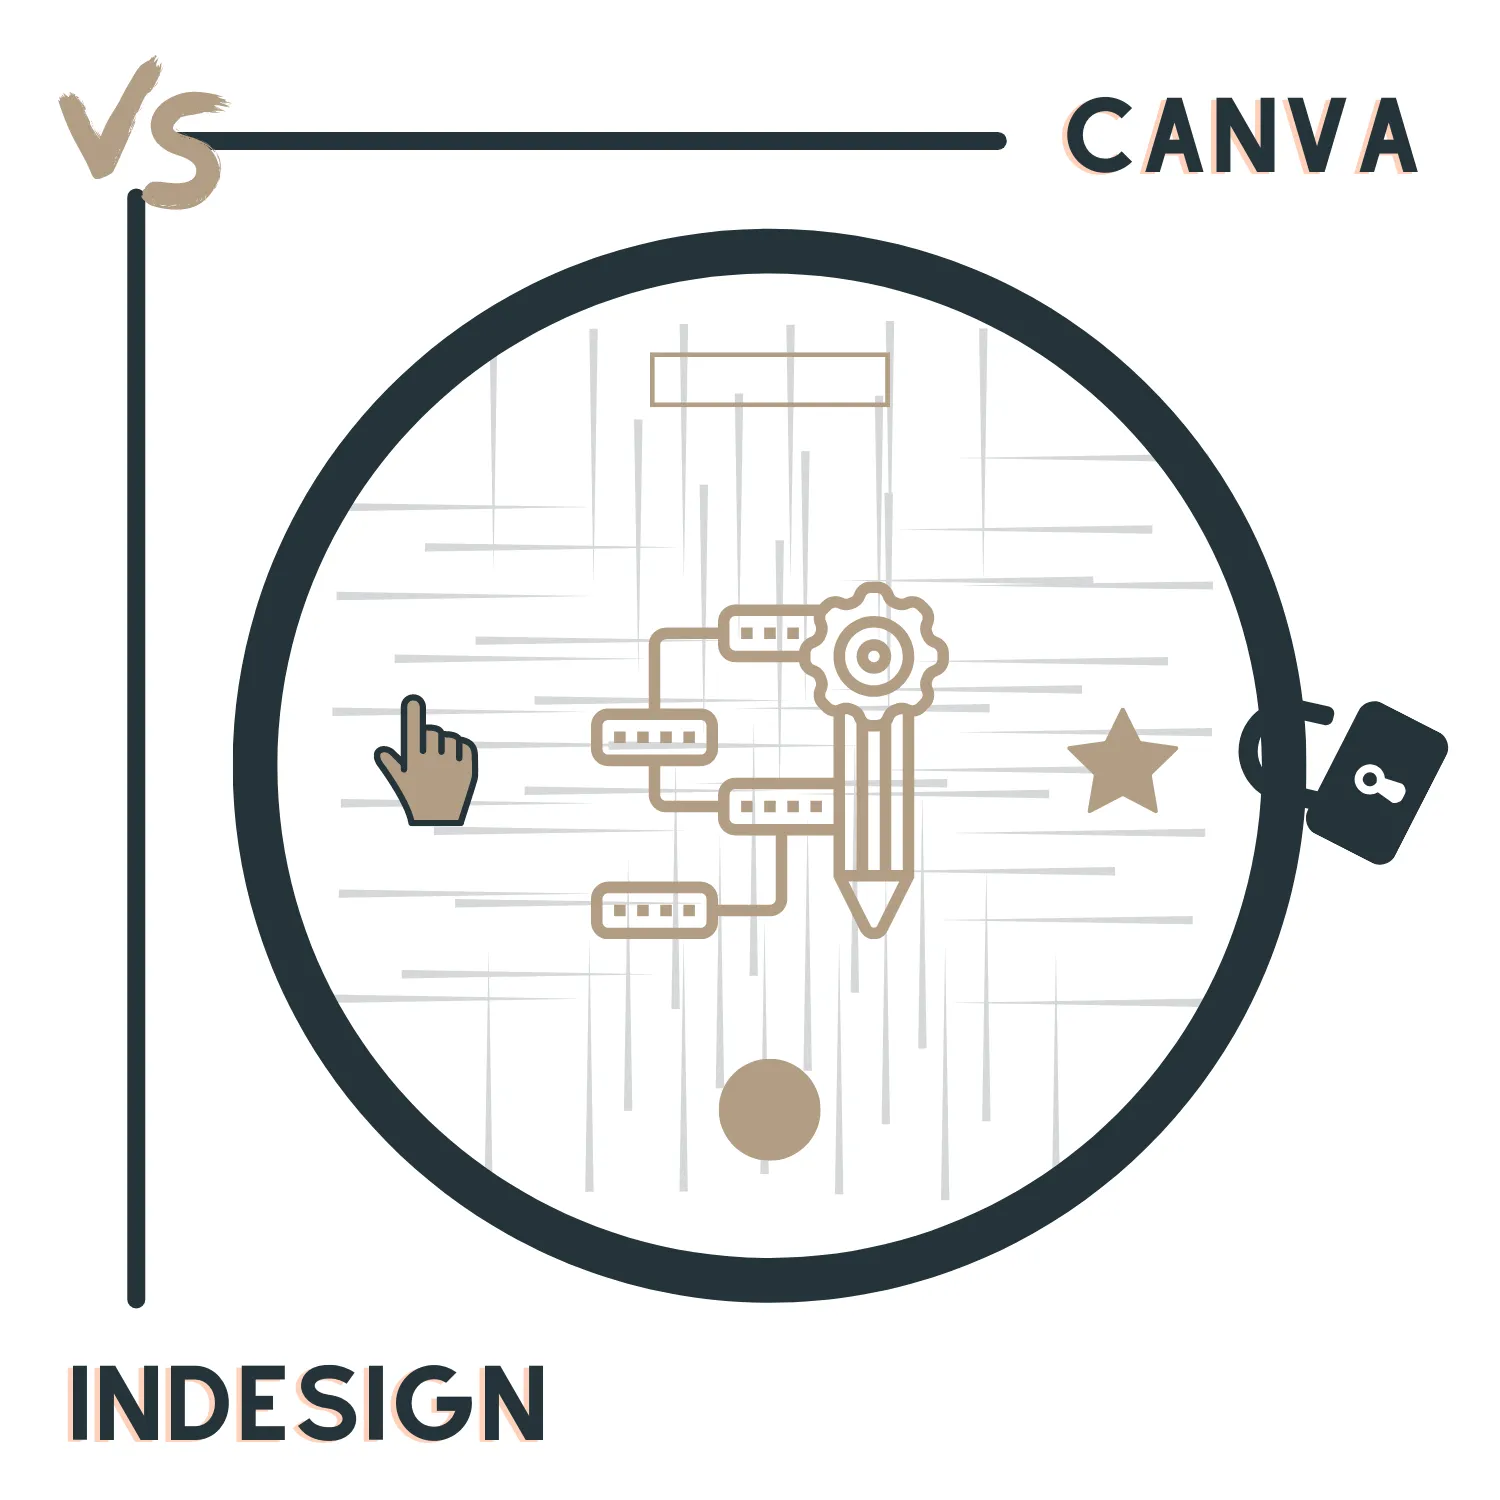 Canva vs Adobe InDesign